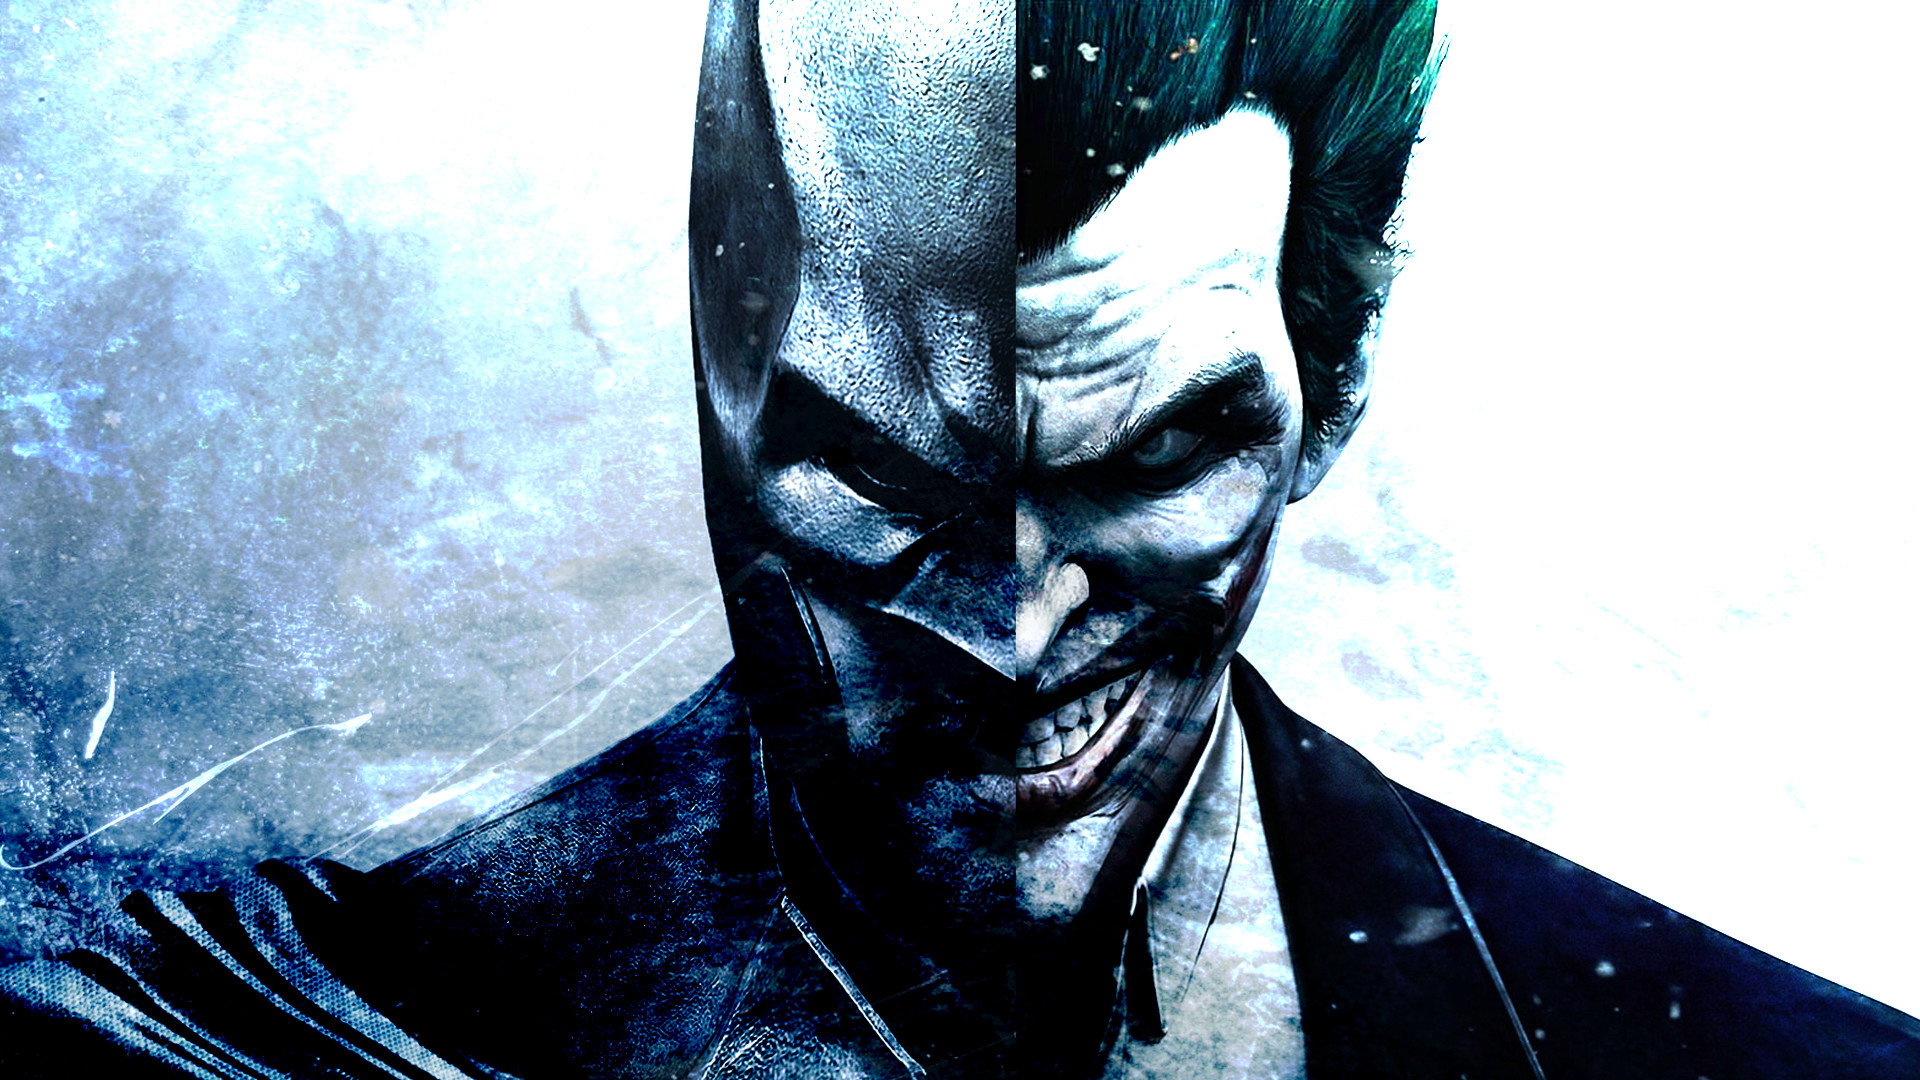 Batman Wallpaper Batman Vs Joker Ver3 By Eziocaval 1920x1080